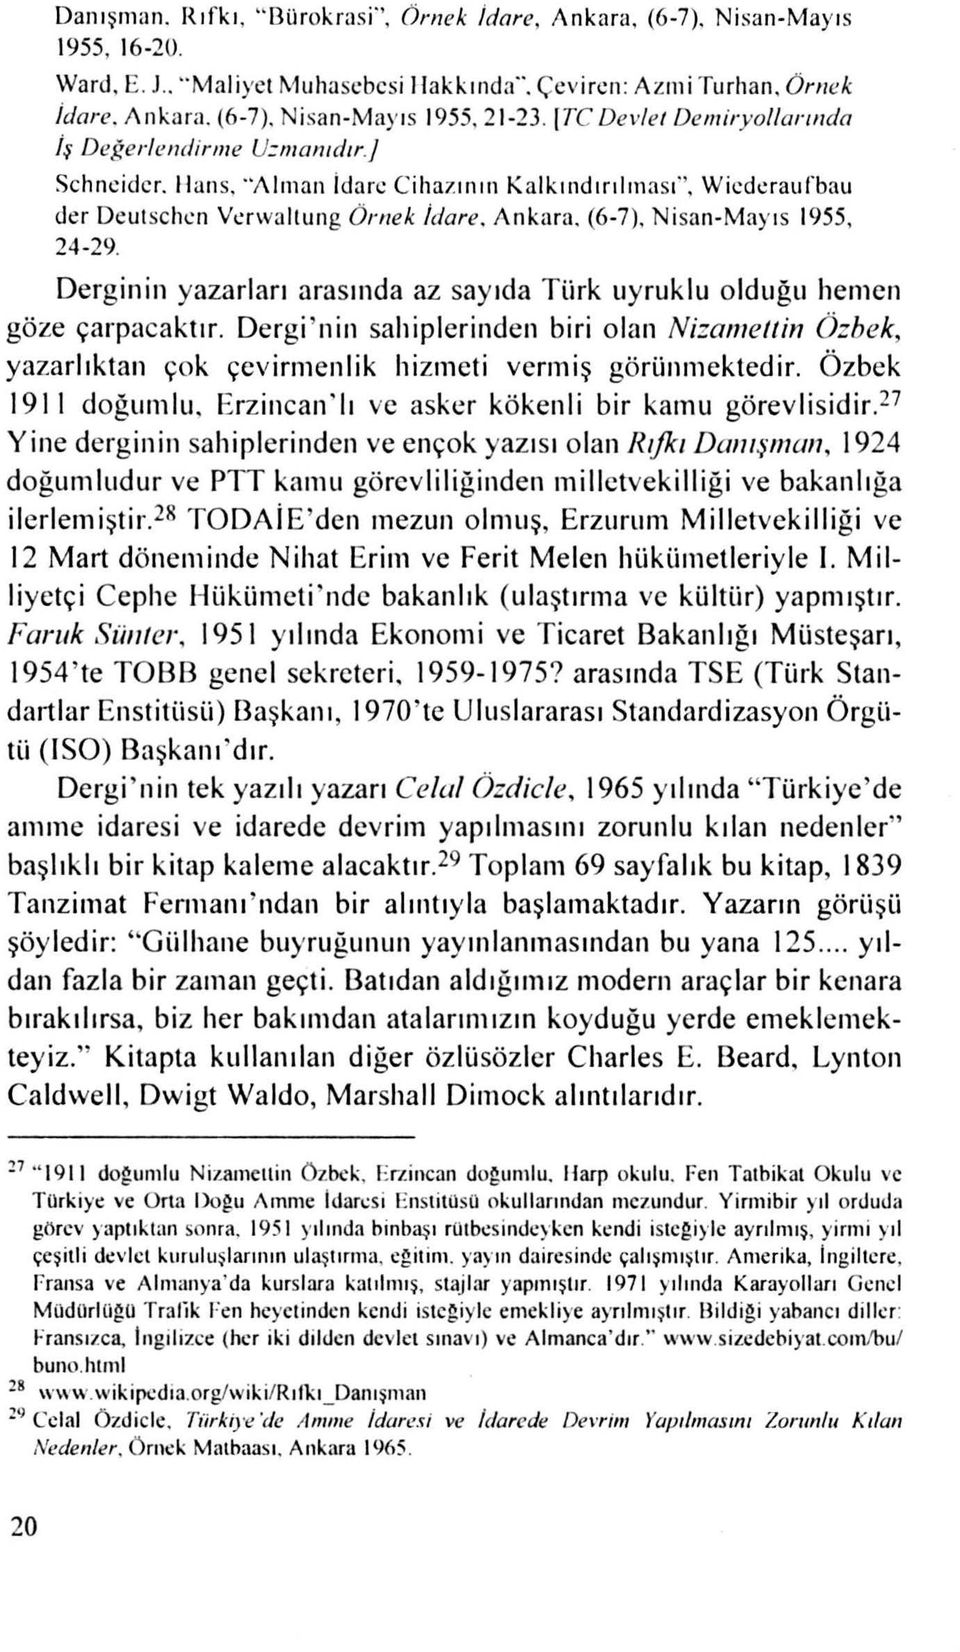 (6-7), Nisan-Mayıs 1955, 24-29. Derginin yaza rları arasında az sayıda Türk uyruklu olduğu hemen göze çarpacaktır.